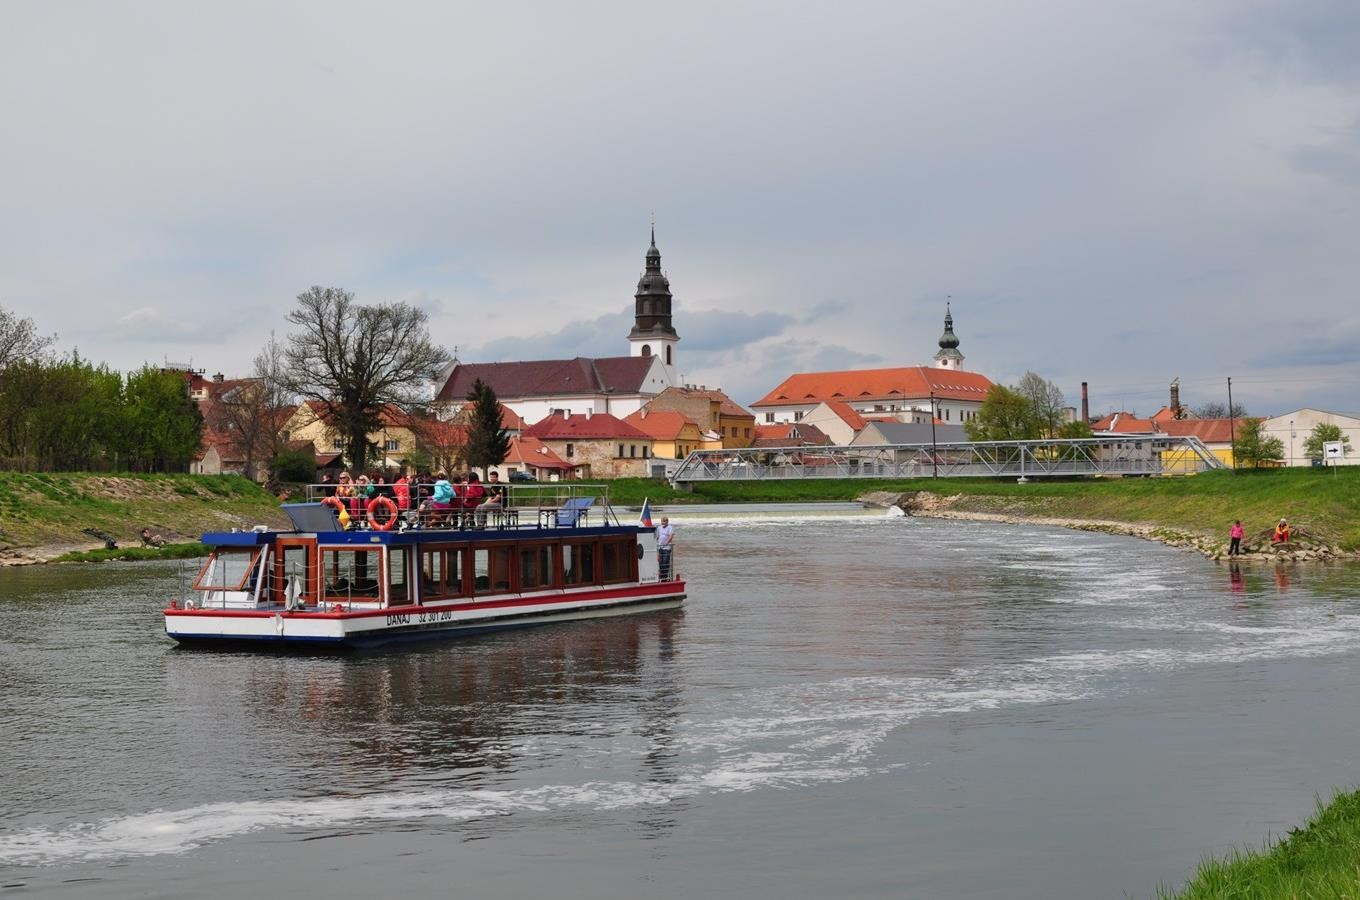 Pravidelné plavby výletních lodí na Baťově kanále: Veselí nad Moravou - Uherský Ostroh - Strážnice